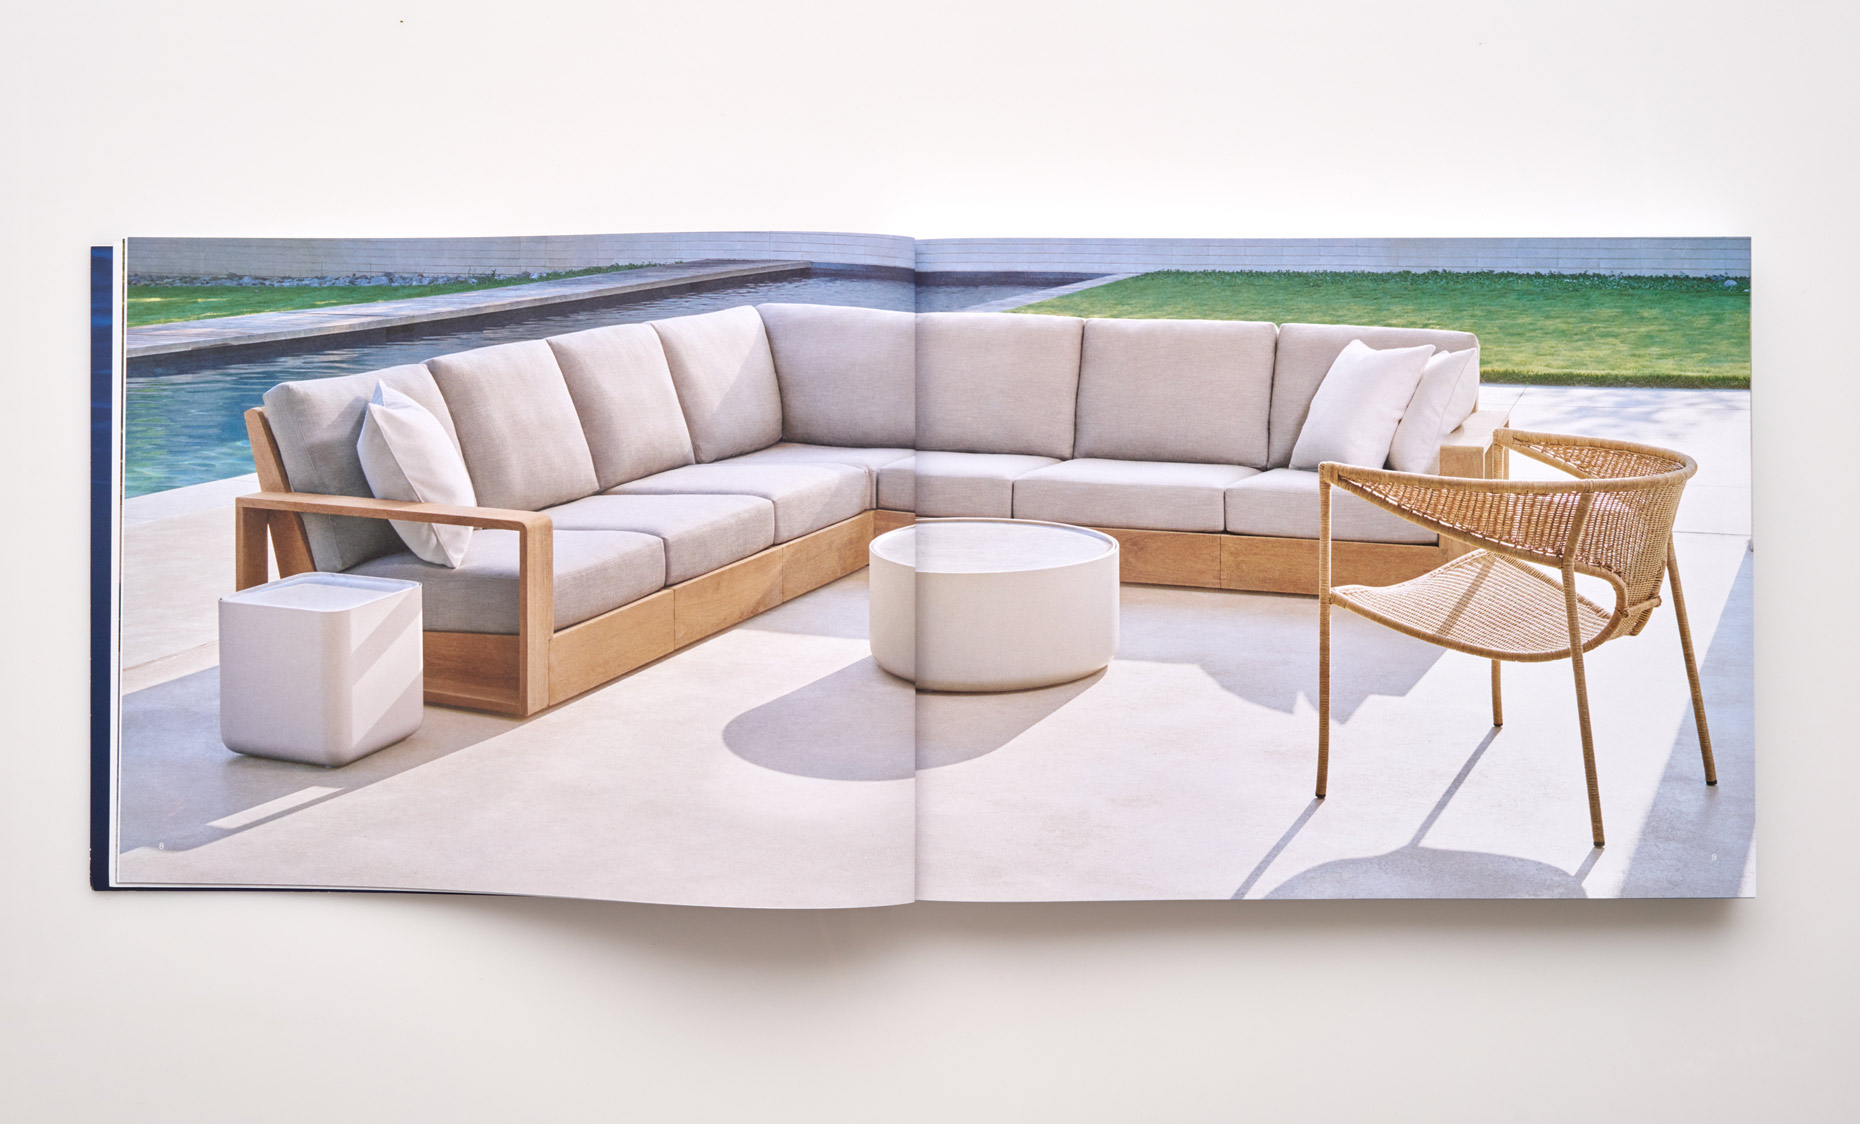 Stephen Karlisch Sutherland Furniture Franck Poolside Sectional